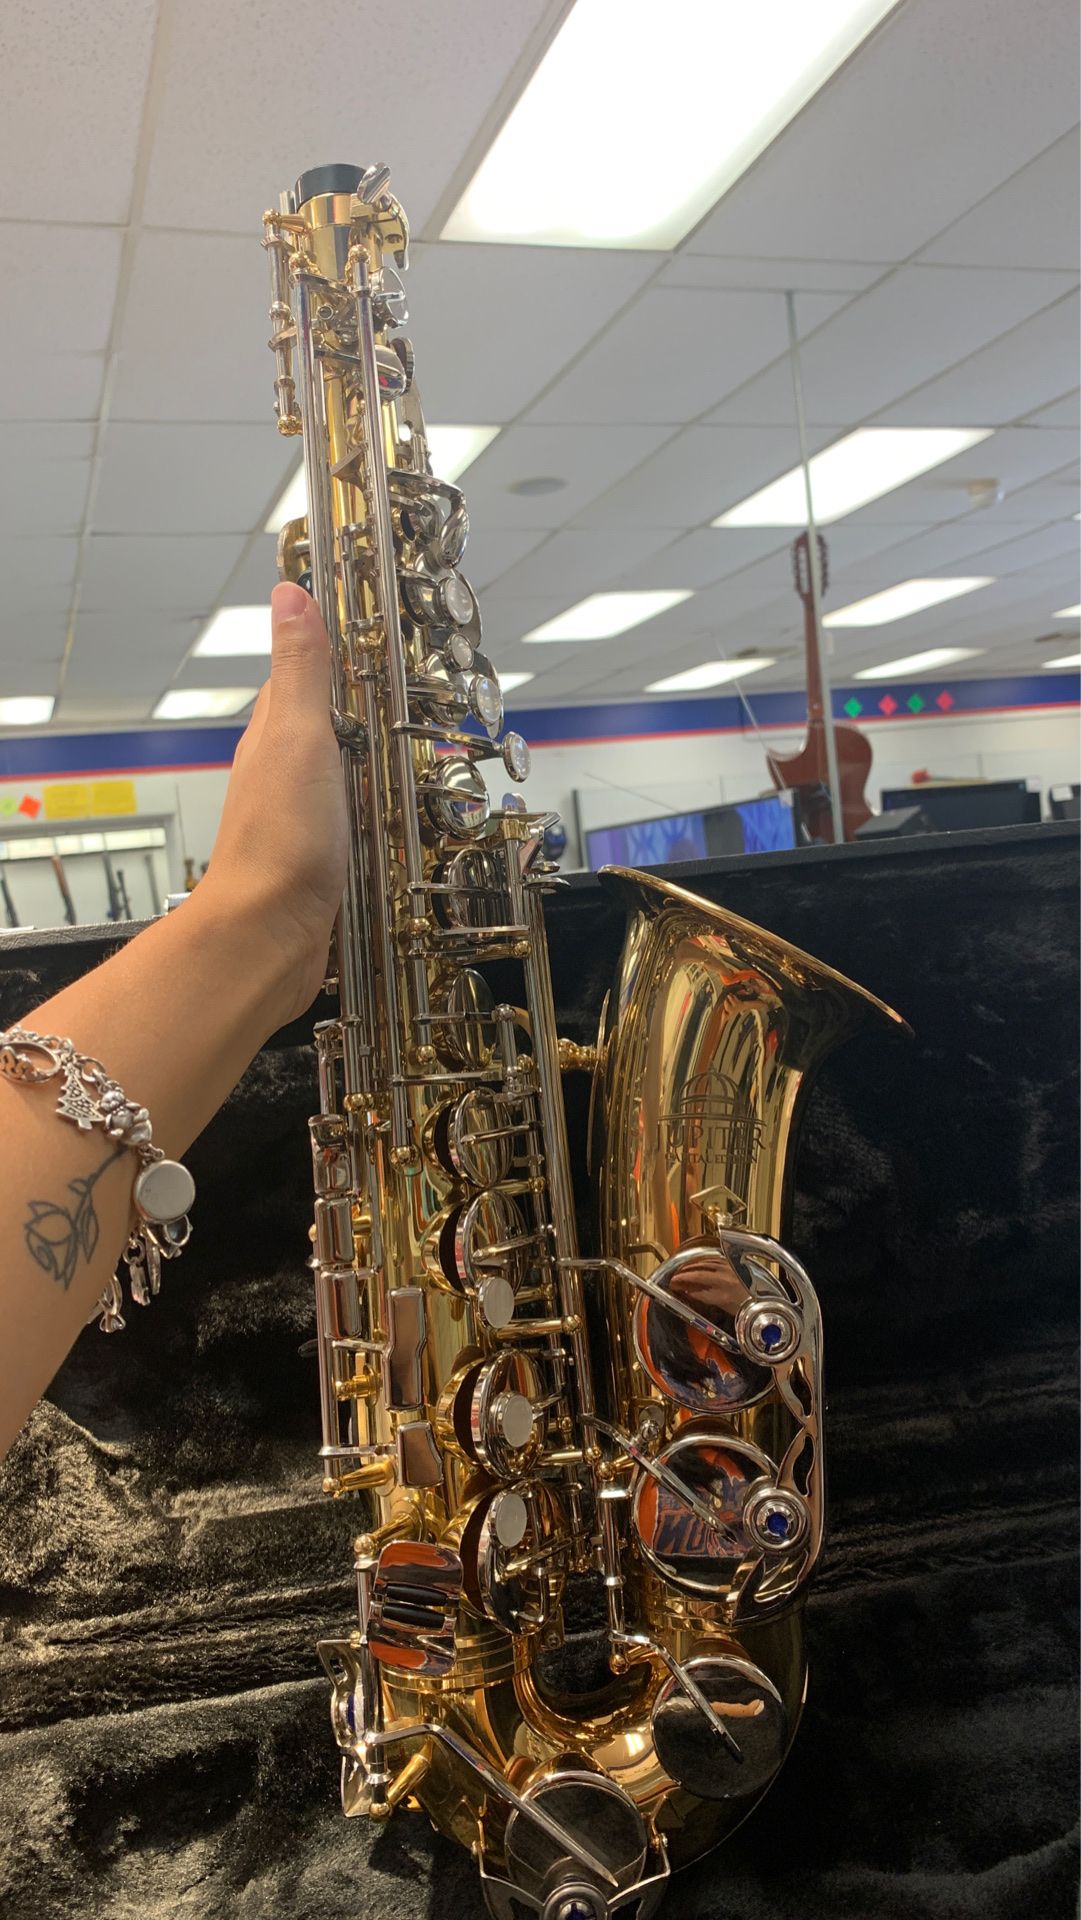 Saxophone Jupiter